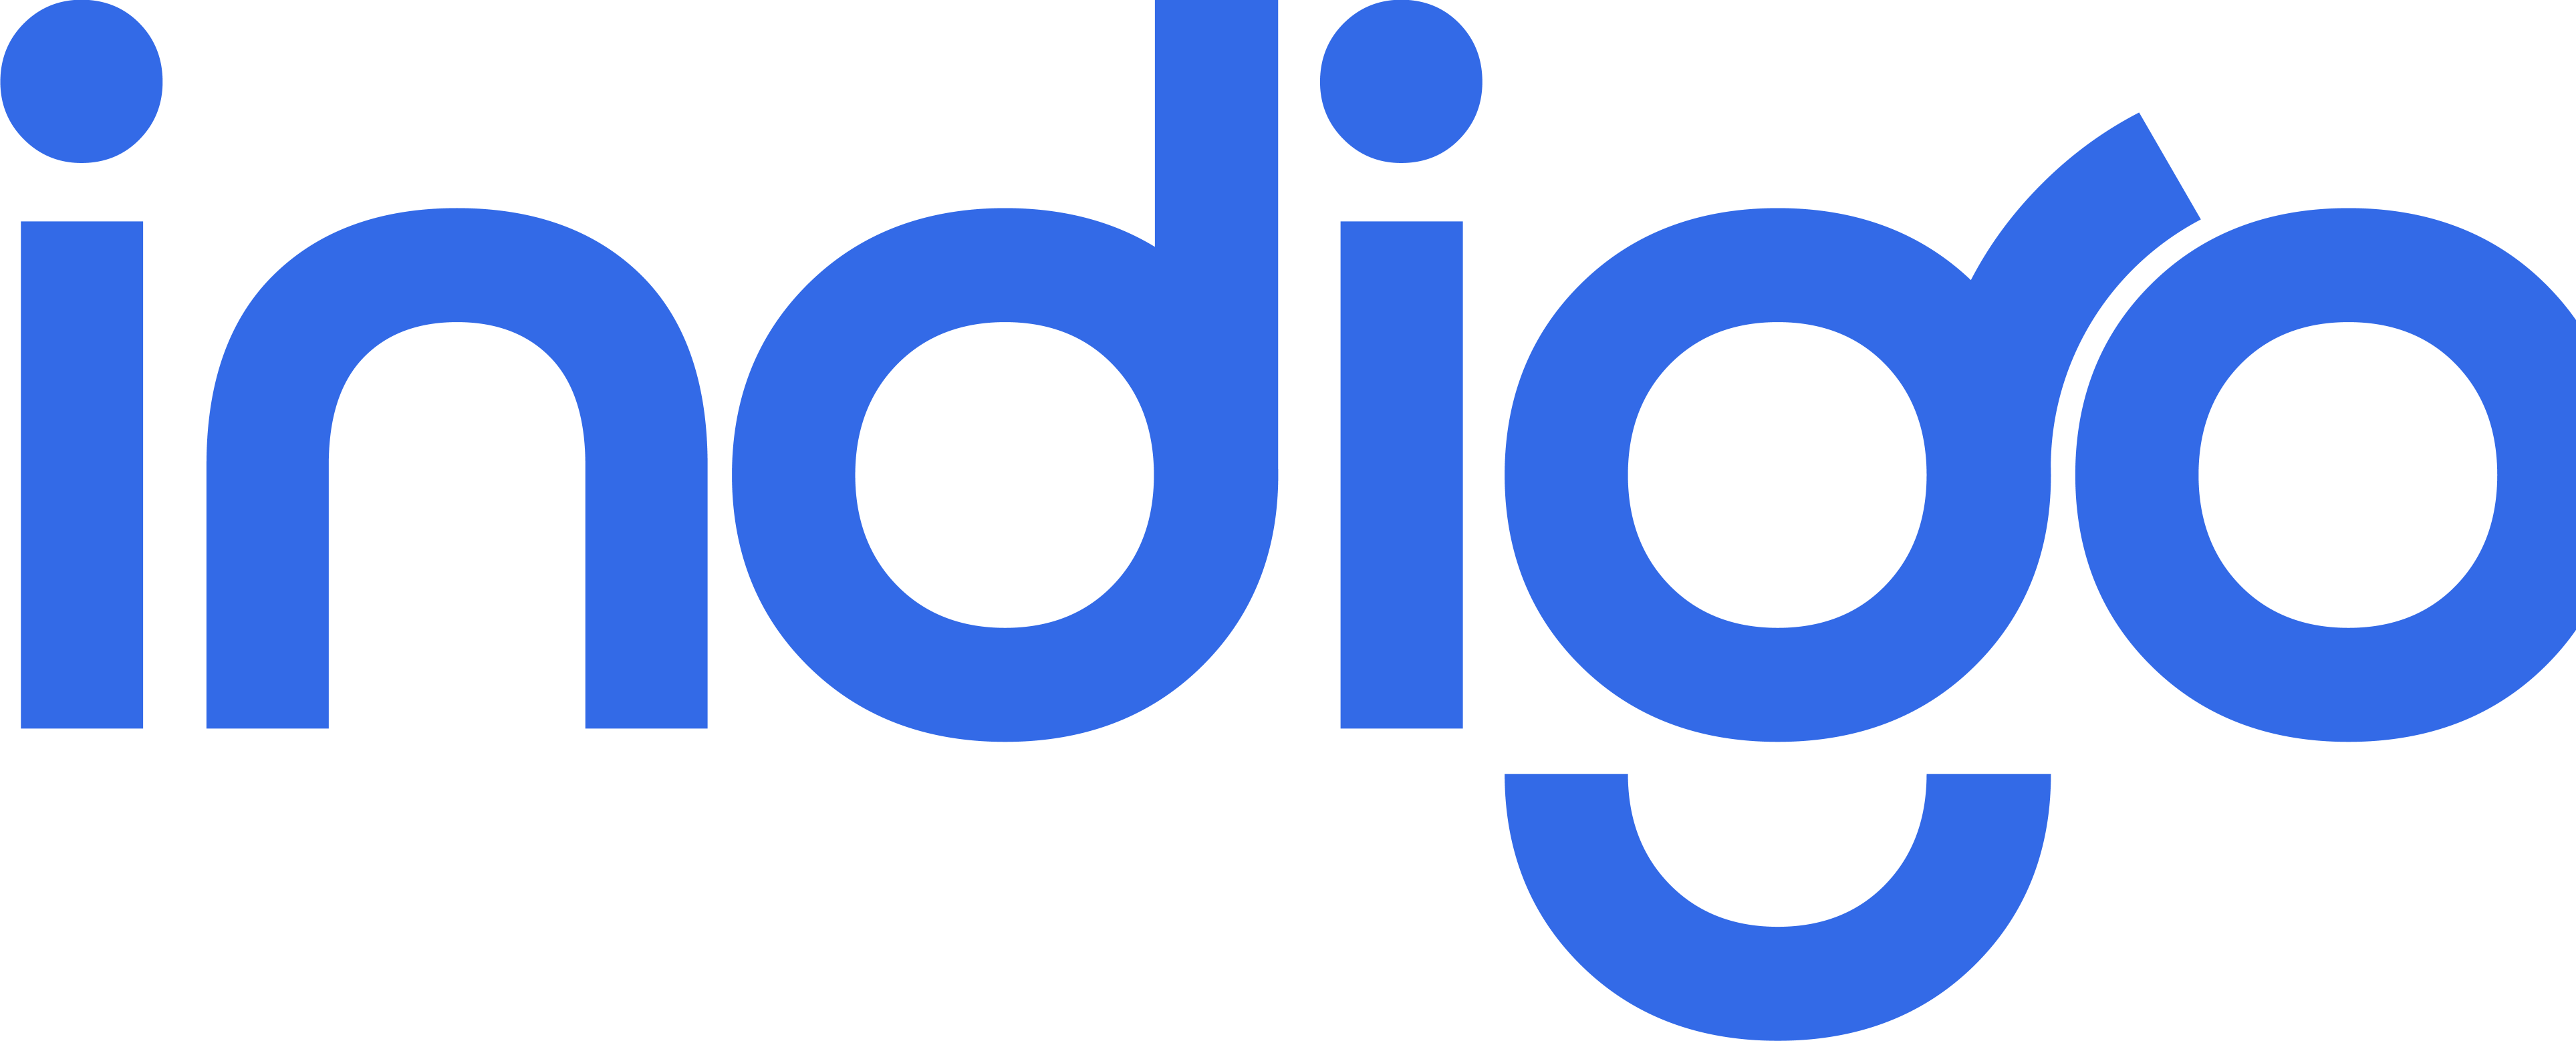 Indigo Digital Melbourne